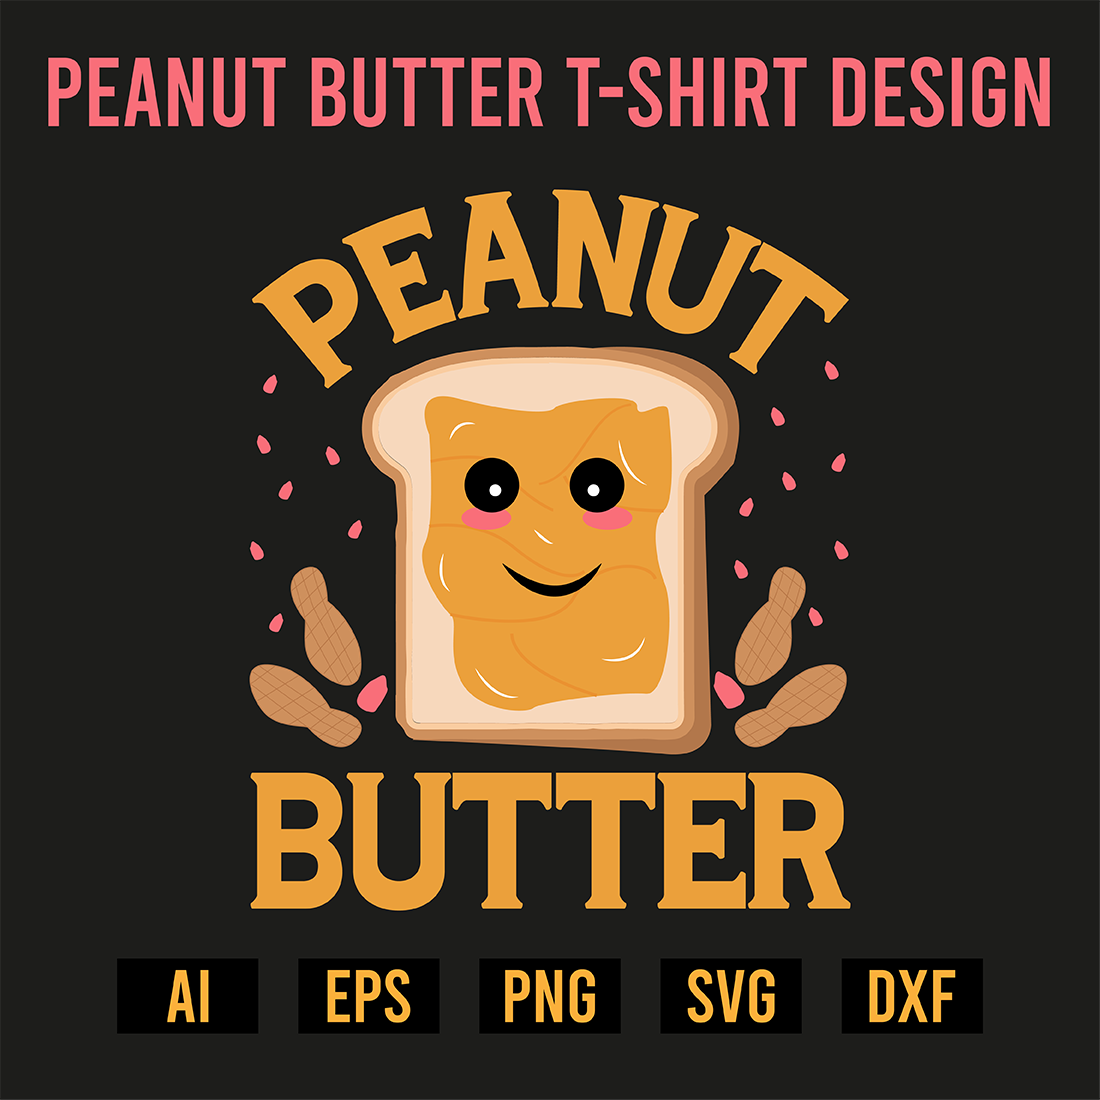 Peanut Butter T-Shirt Design cover